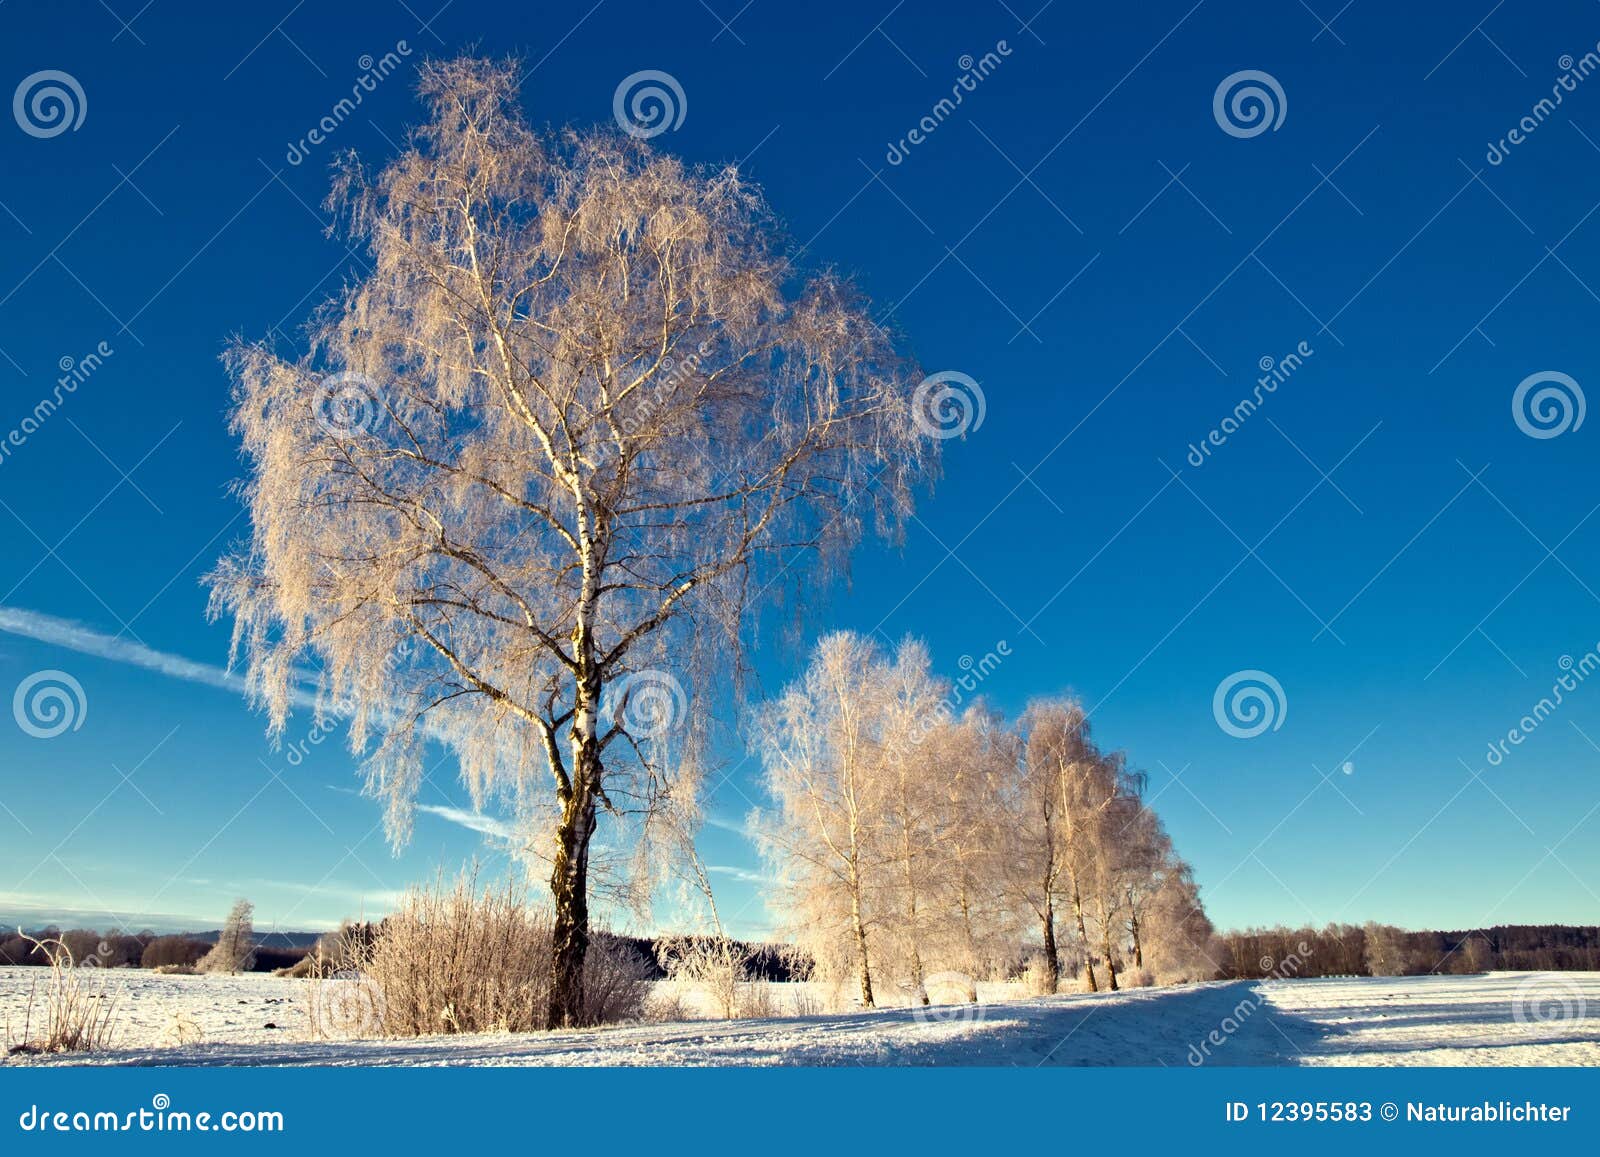 trees in wintry landscape